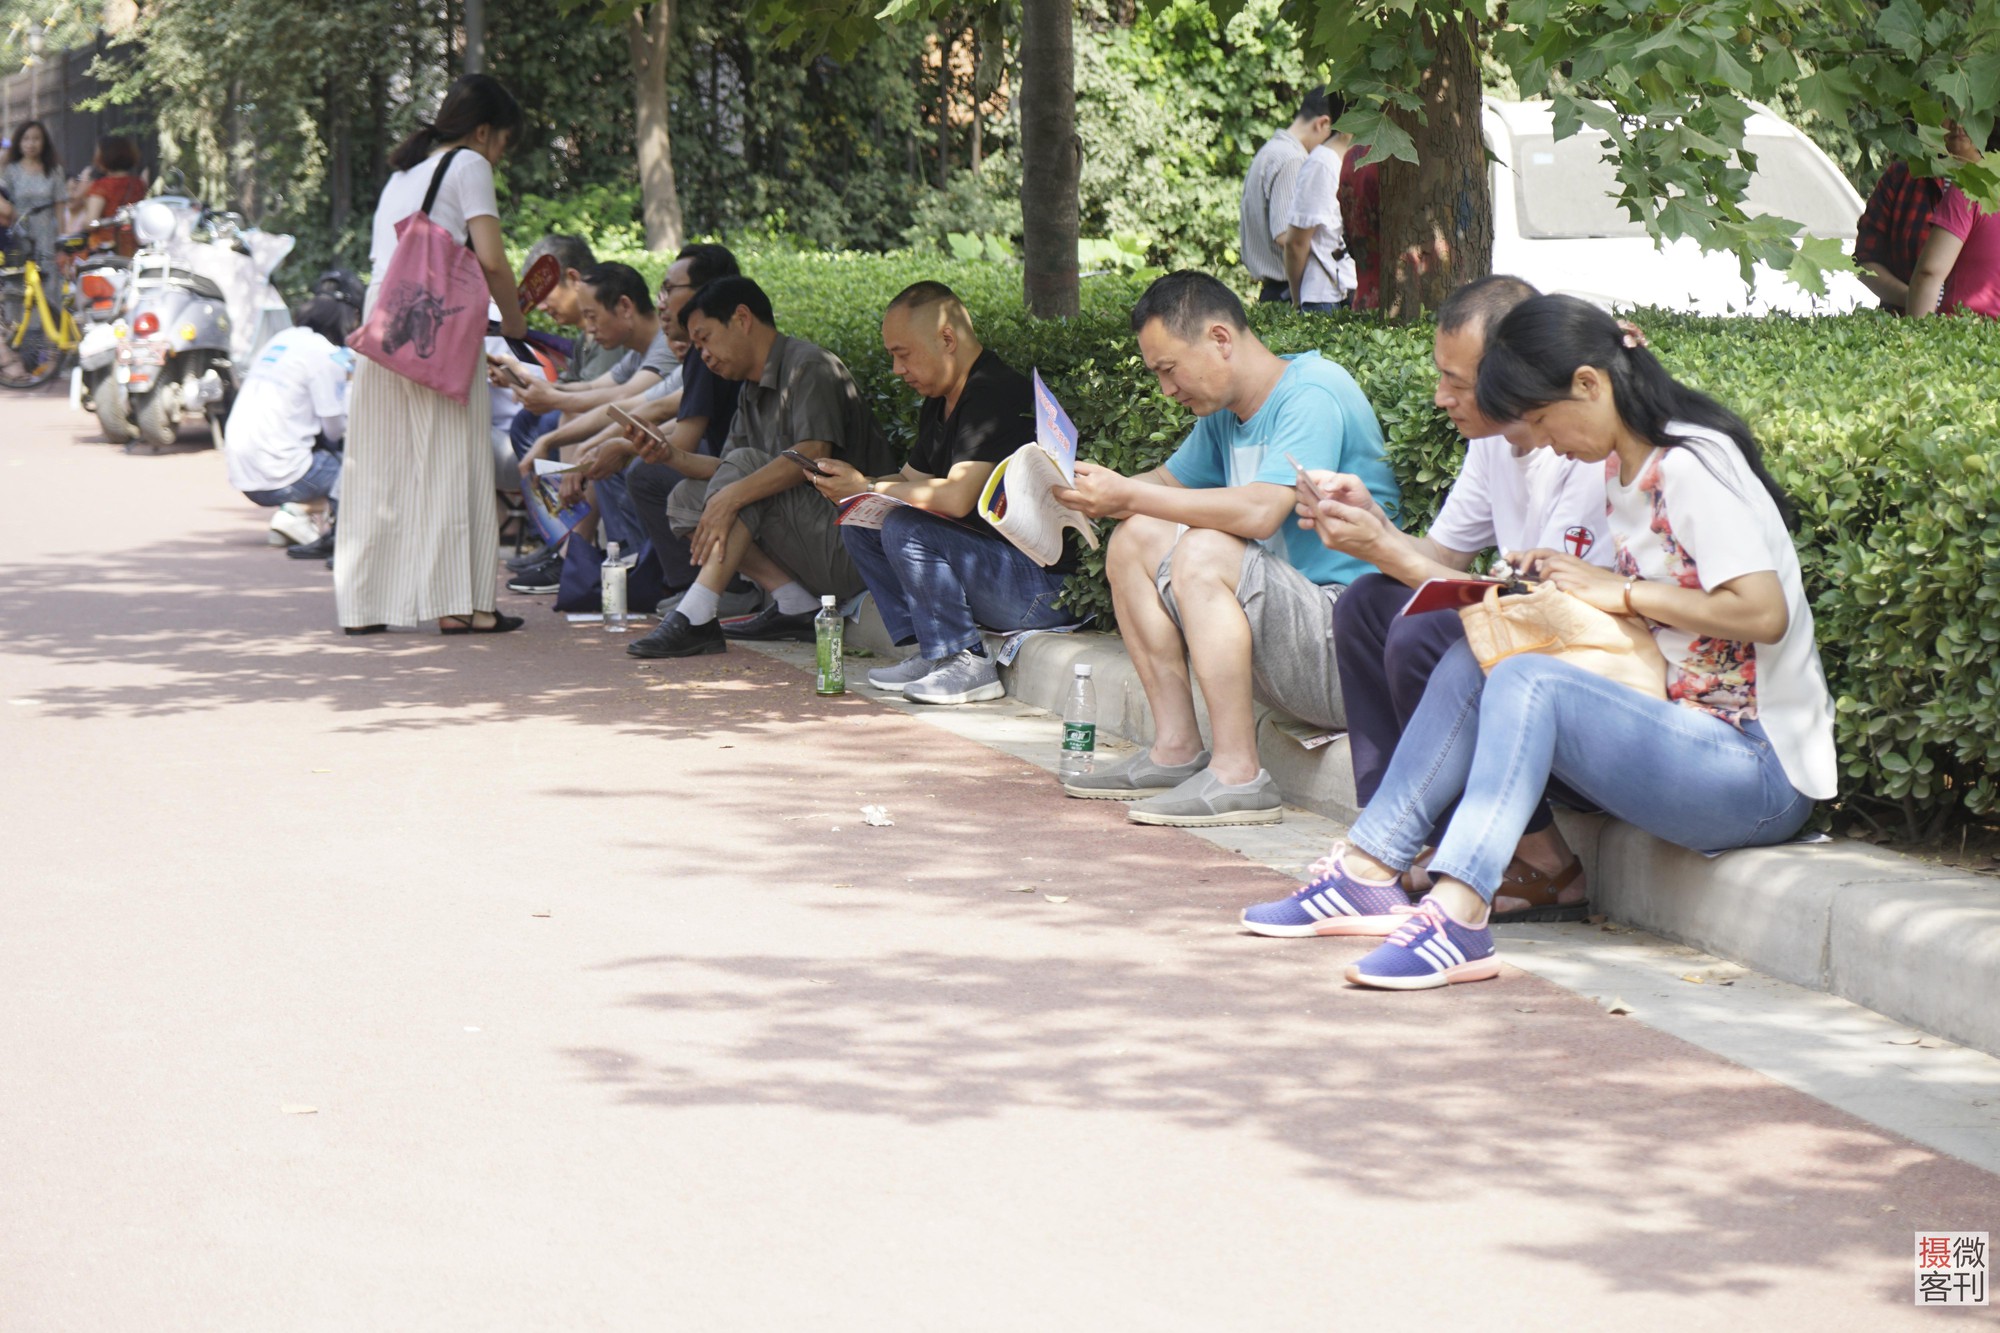 Muôn vàn tâm trạng của cha mẹ thí sinh Trung Quốc trong ngày đầu tiên thi đại học - Ảnh 8.